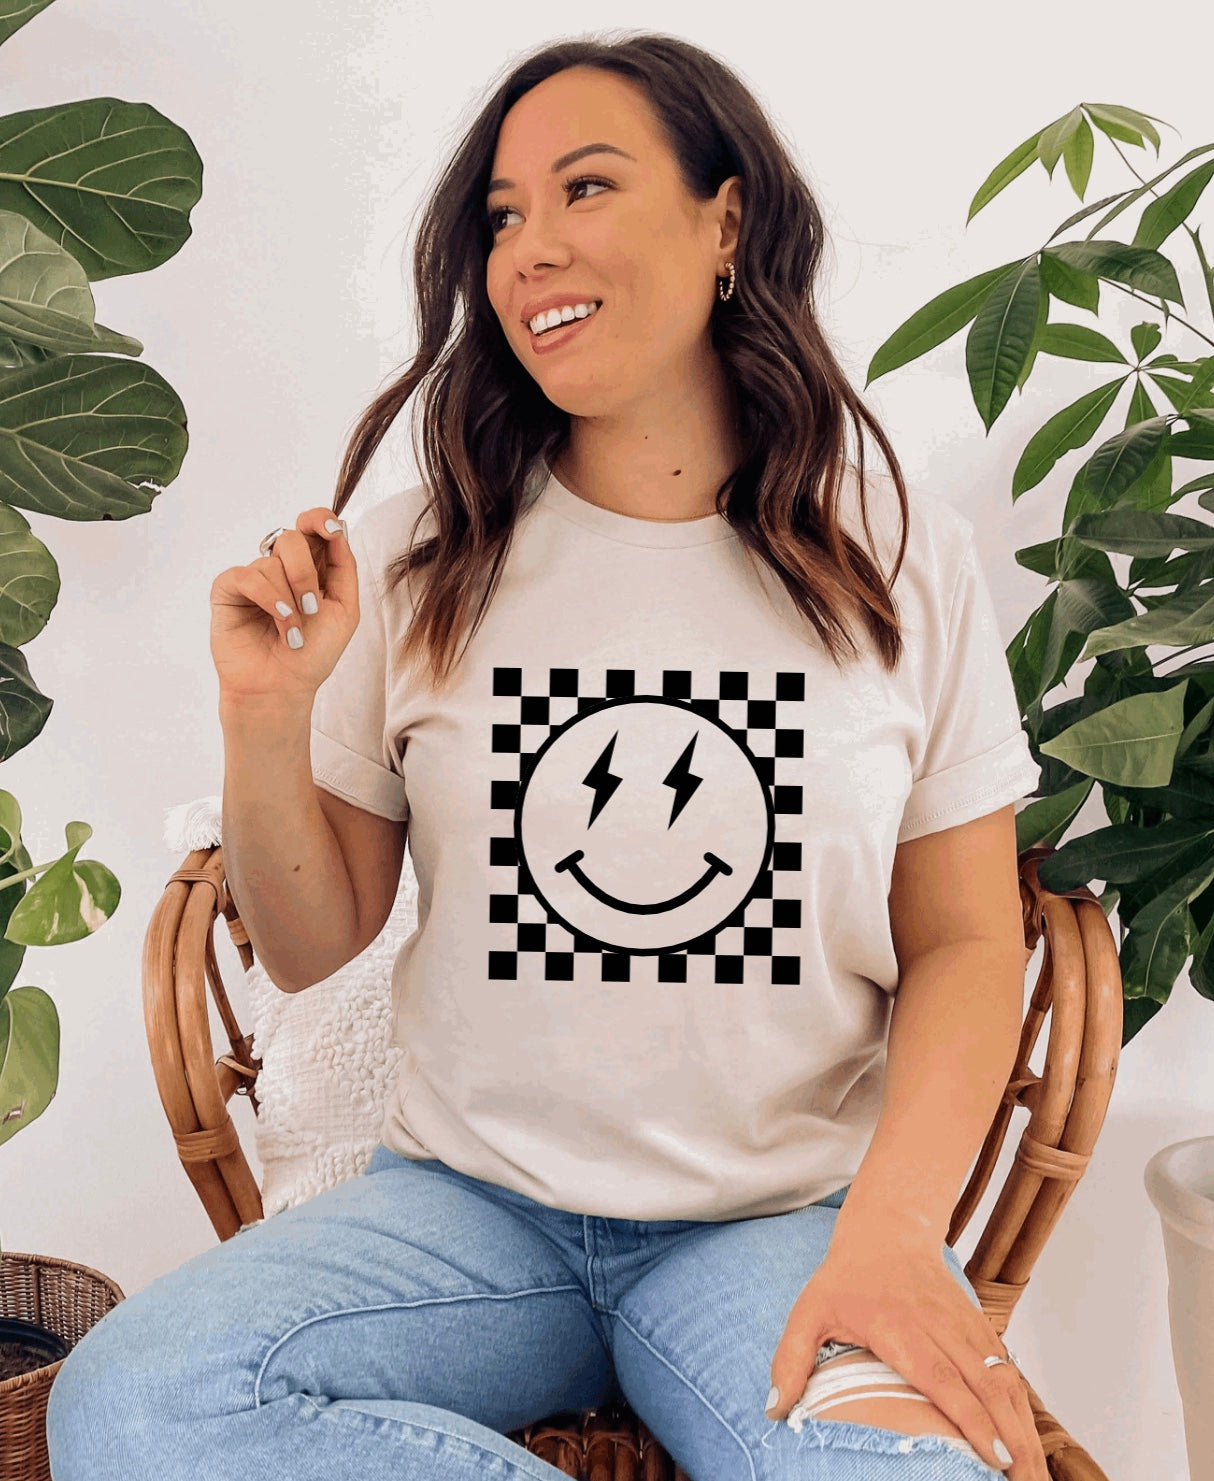 Retro checkered smiley face t-shirt 